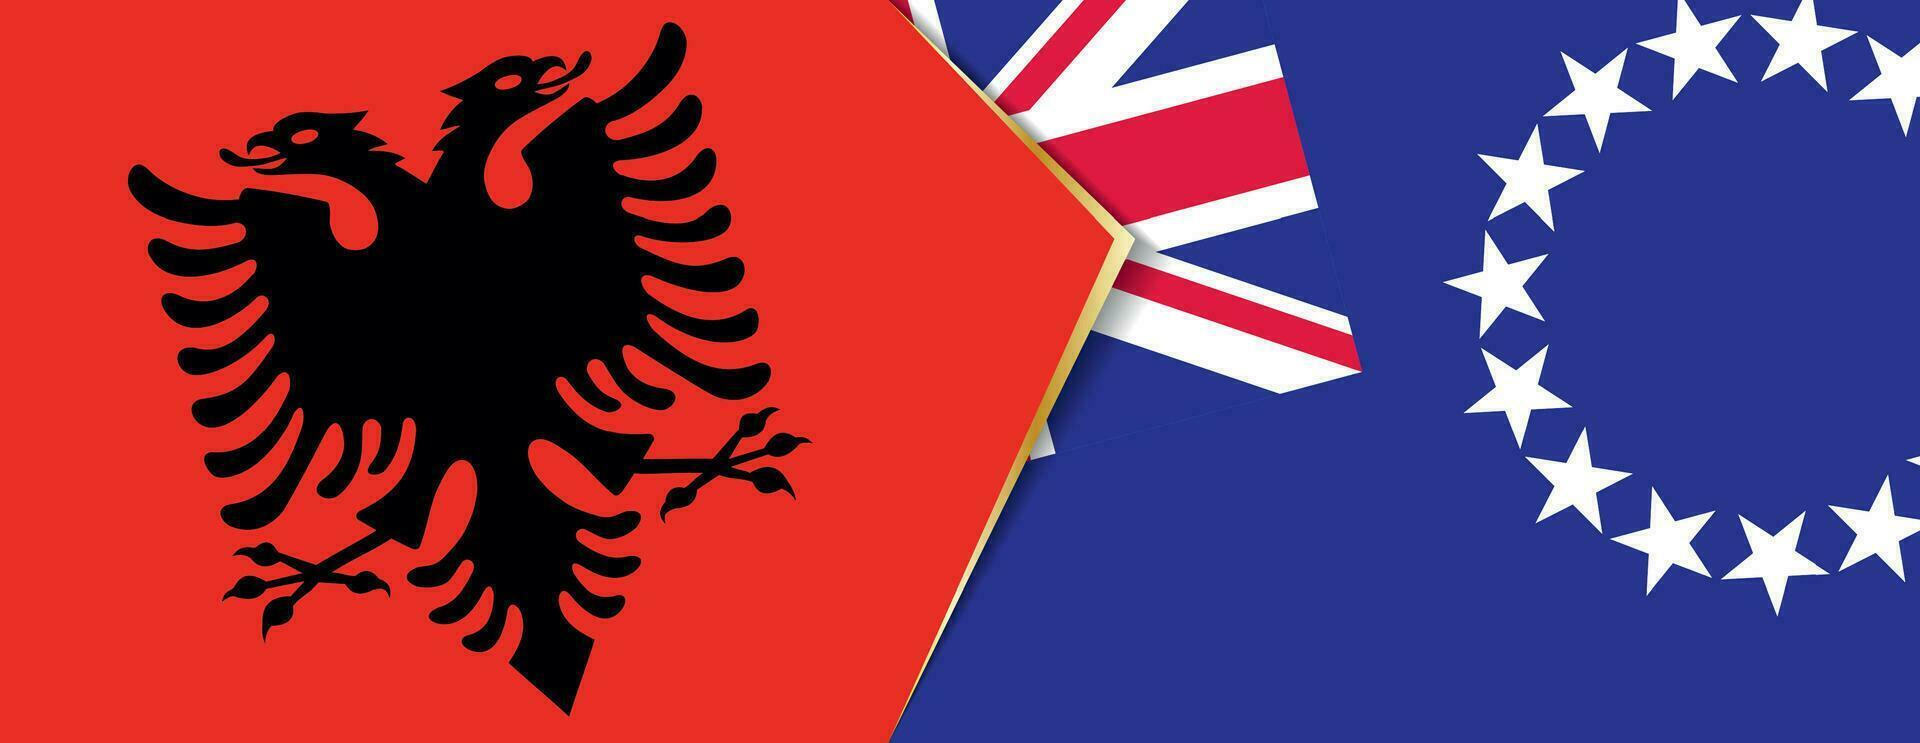 Albanien und Koch Inseln Flaggen, zwei Vektor Flaggen.